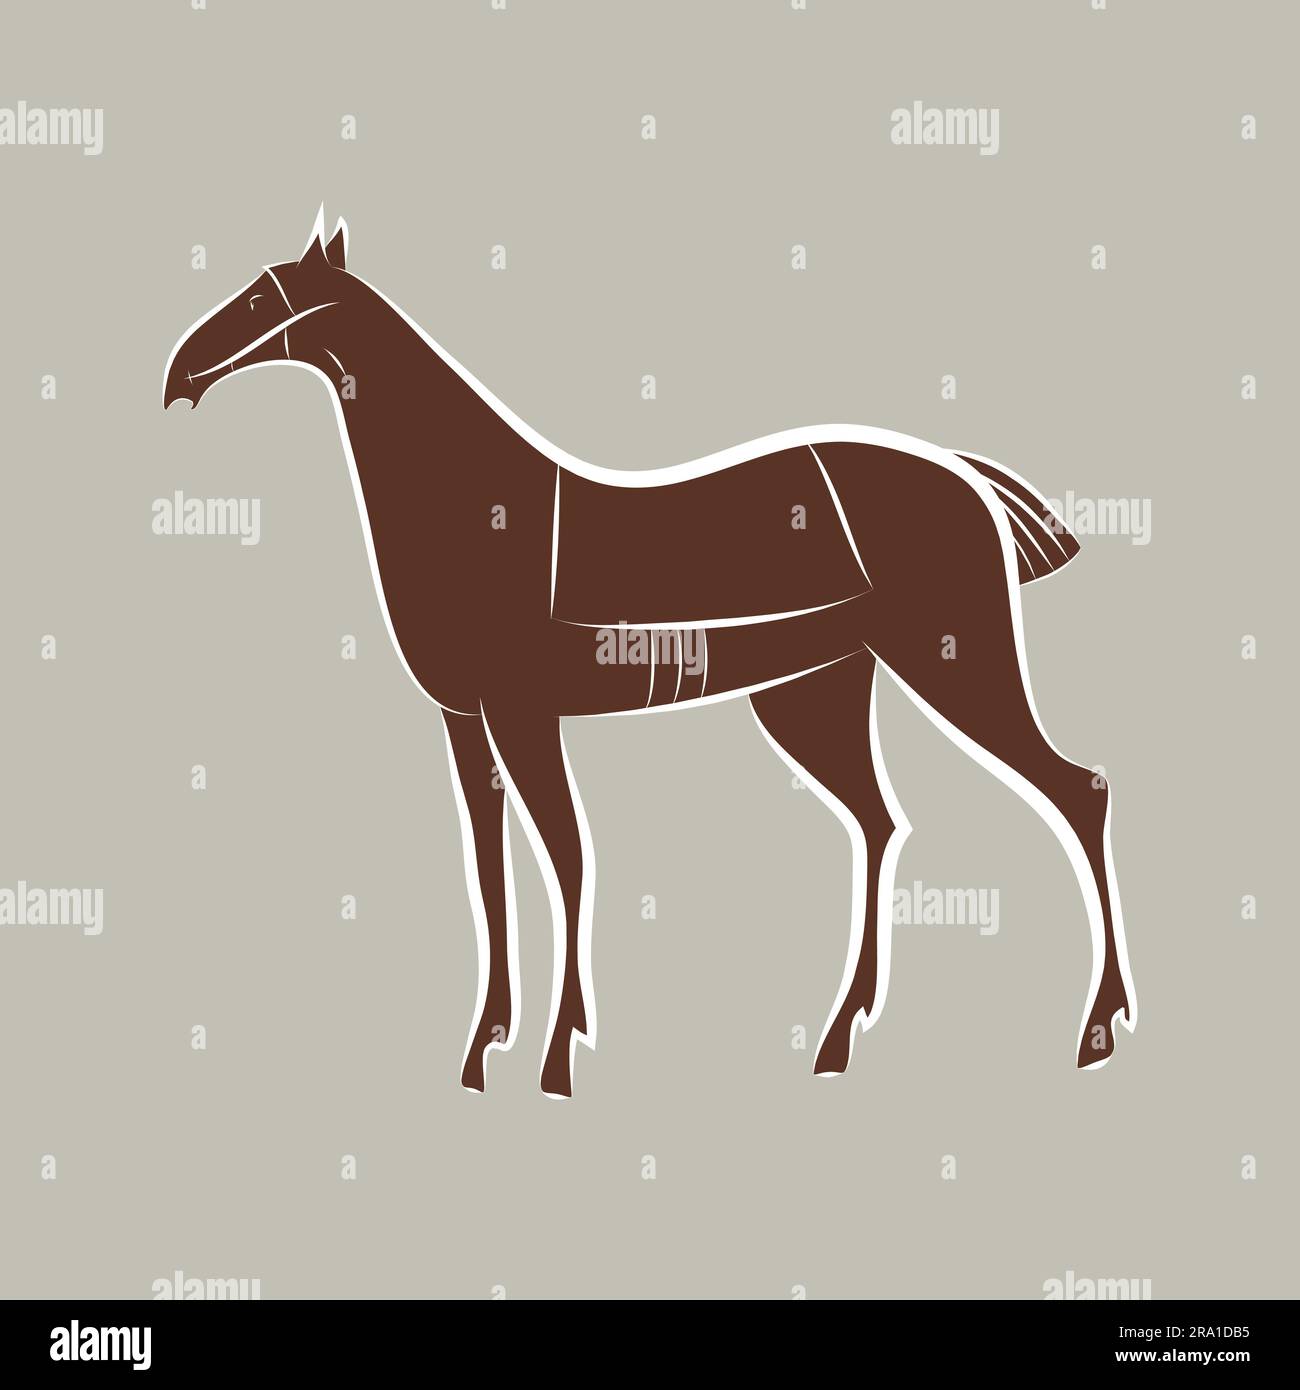 Braunes, anmutiges, edles Pferd mit weißem Umriss. Mustang-Handzeichnung. Majestätische Tiersilhouette isoliert. Bay-Hengst-Anzug. Ein Rennpferd-Maskottchen Stock Vektor